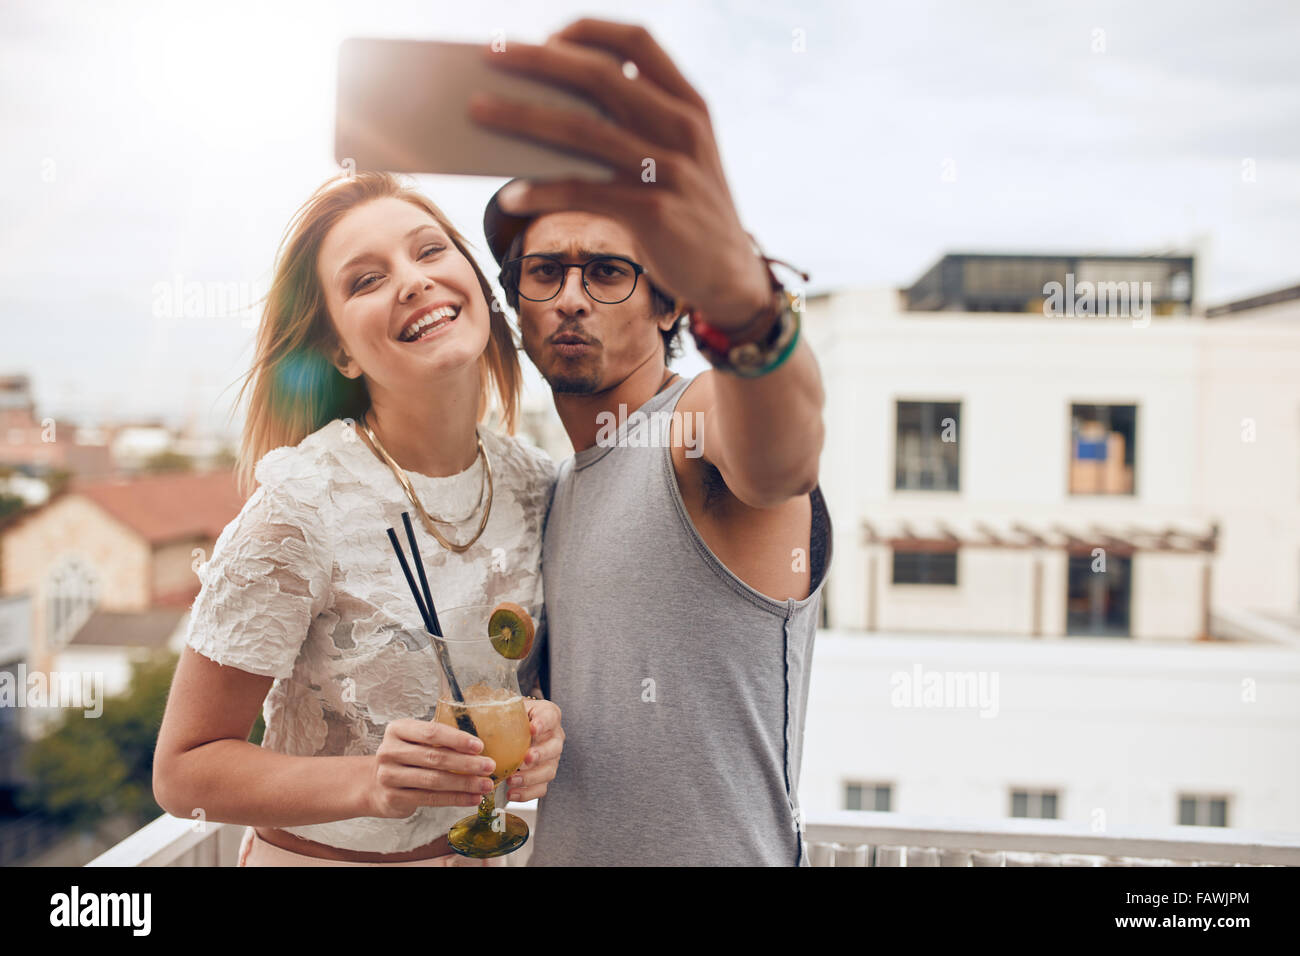 Zwei junge Freunde, die auf dem Dach eine Selfie übernehmen. Mann hält Smartphone und Selbstportrait mit Frau hält einen cocktail dur Stockfoto